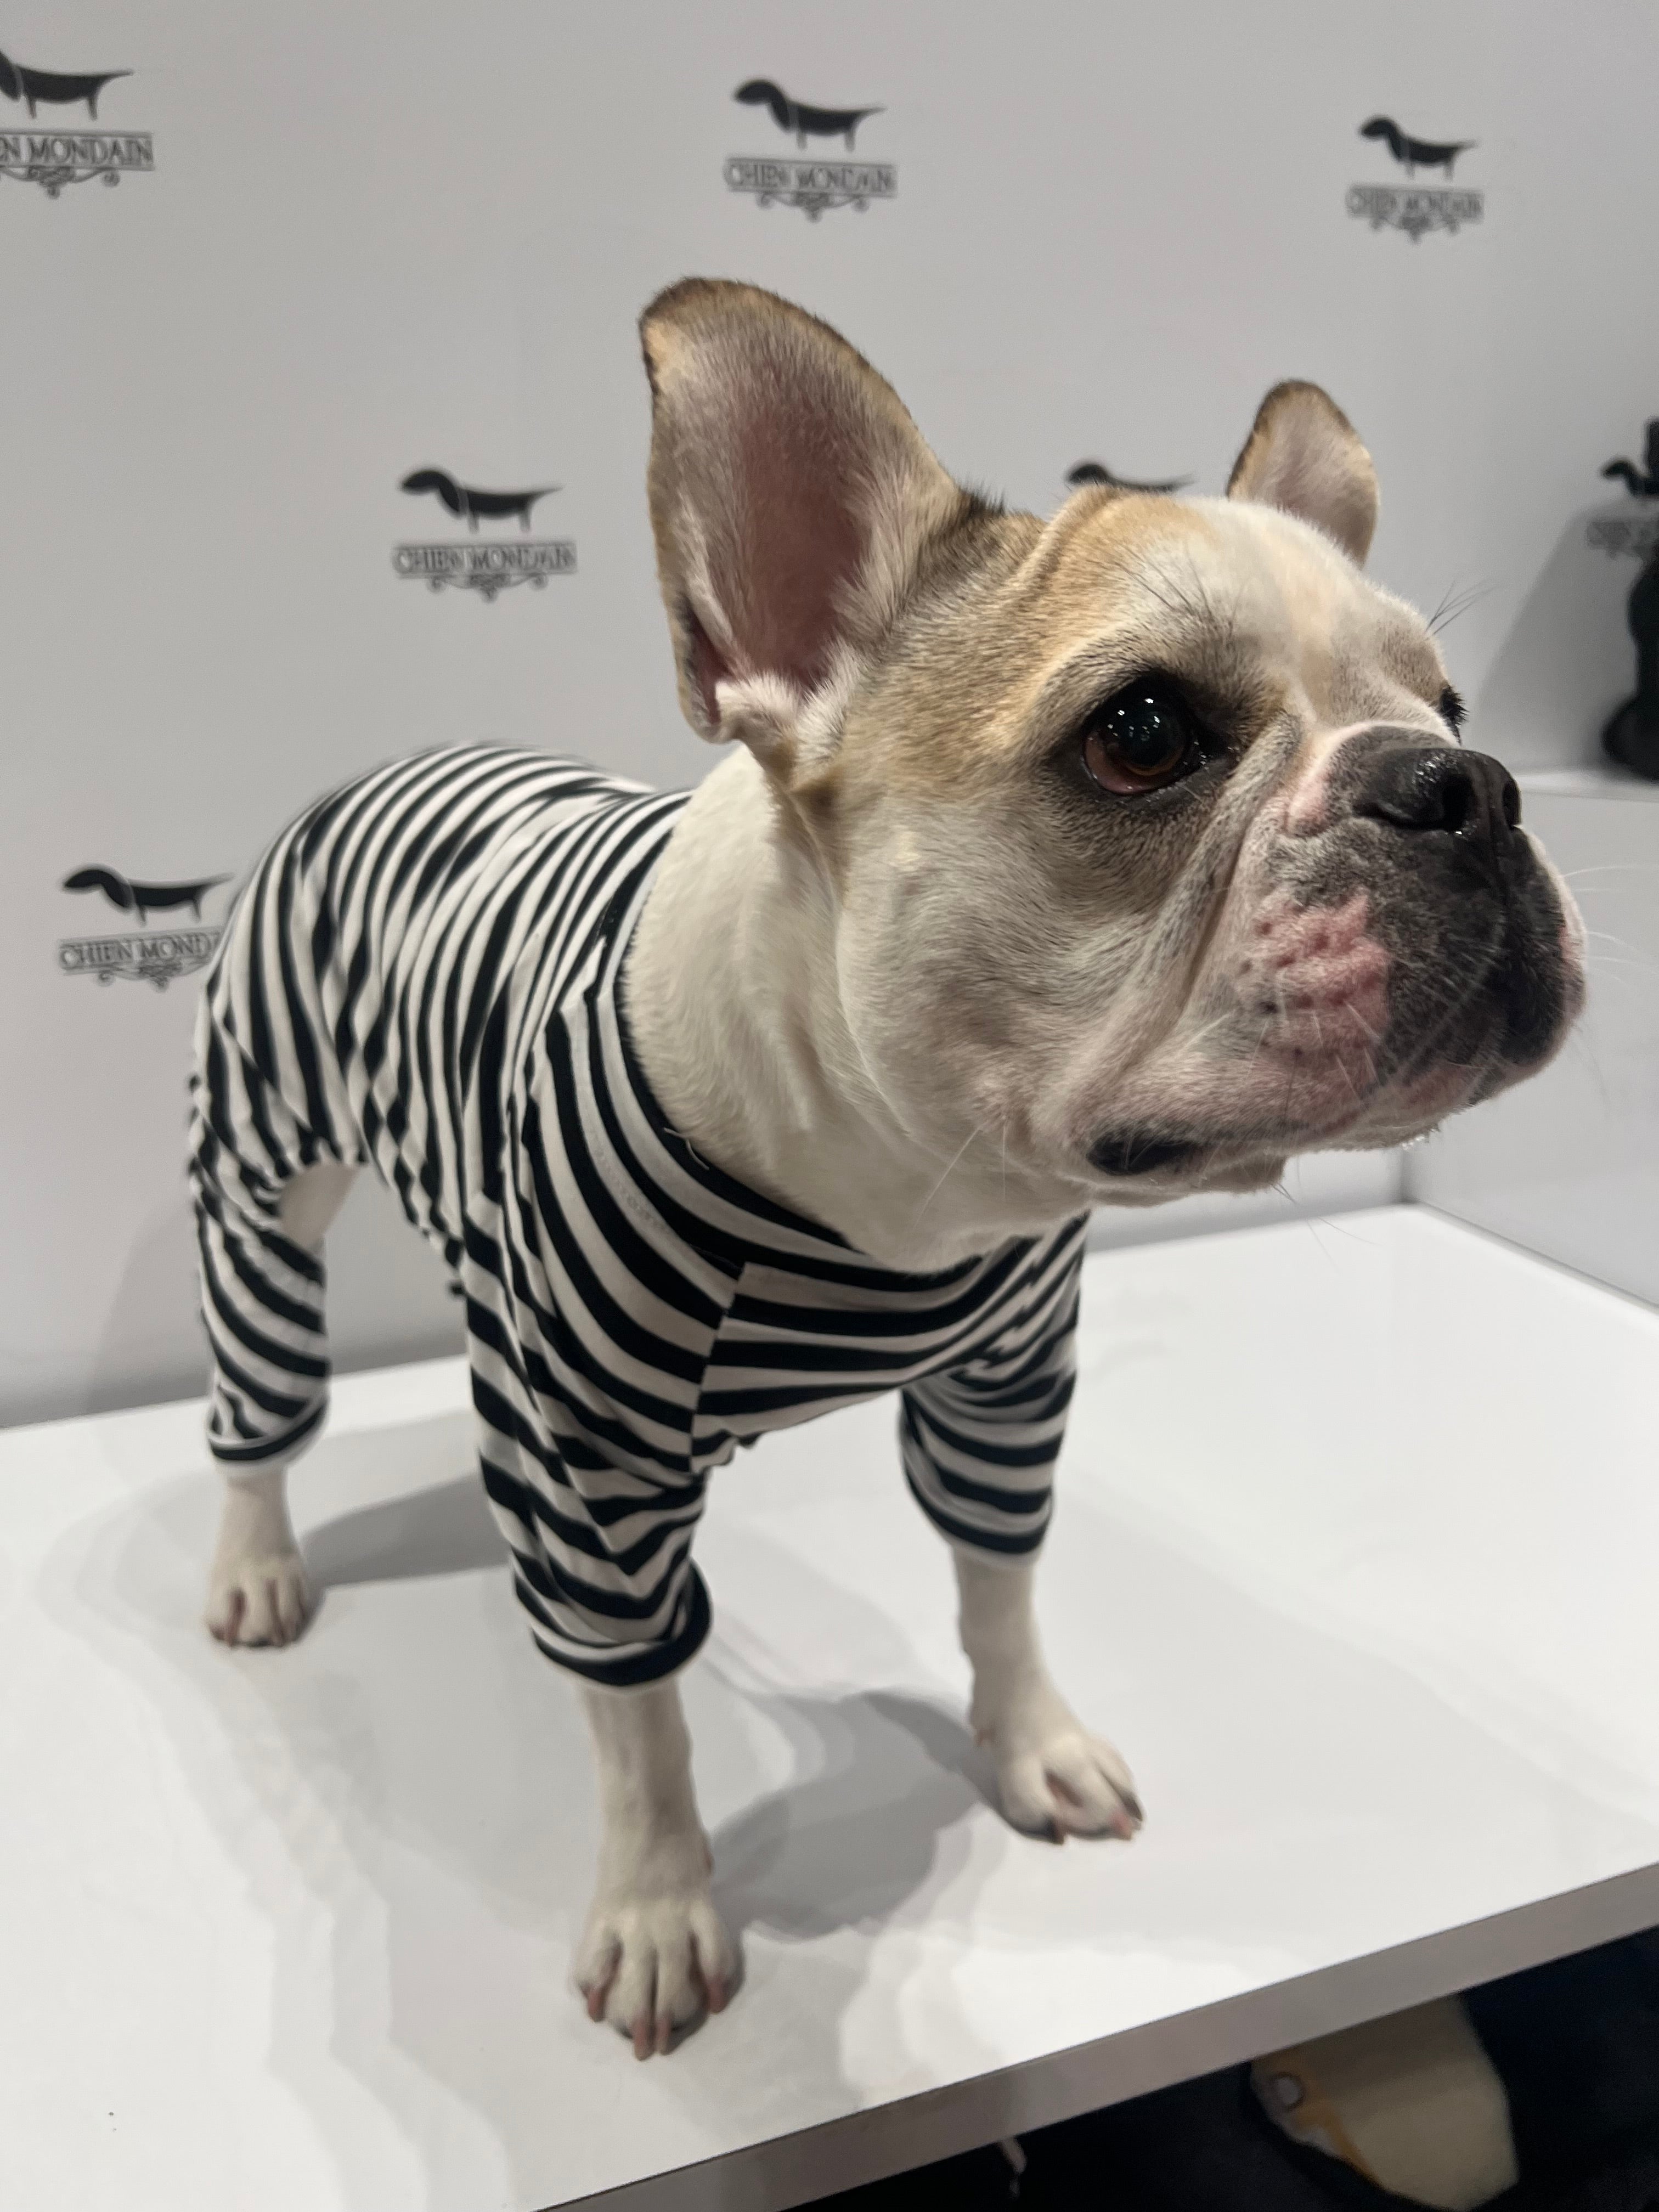 Black and white striped dog pajamas